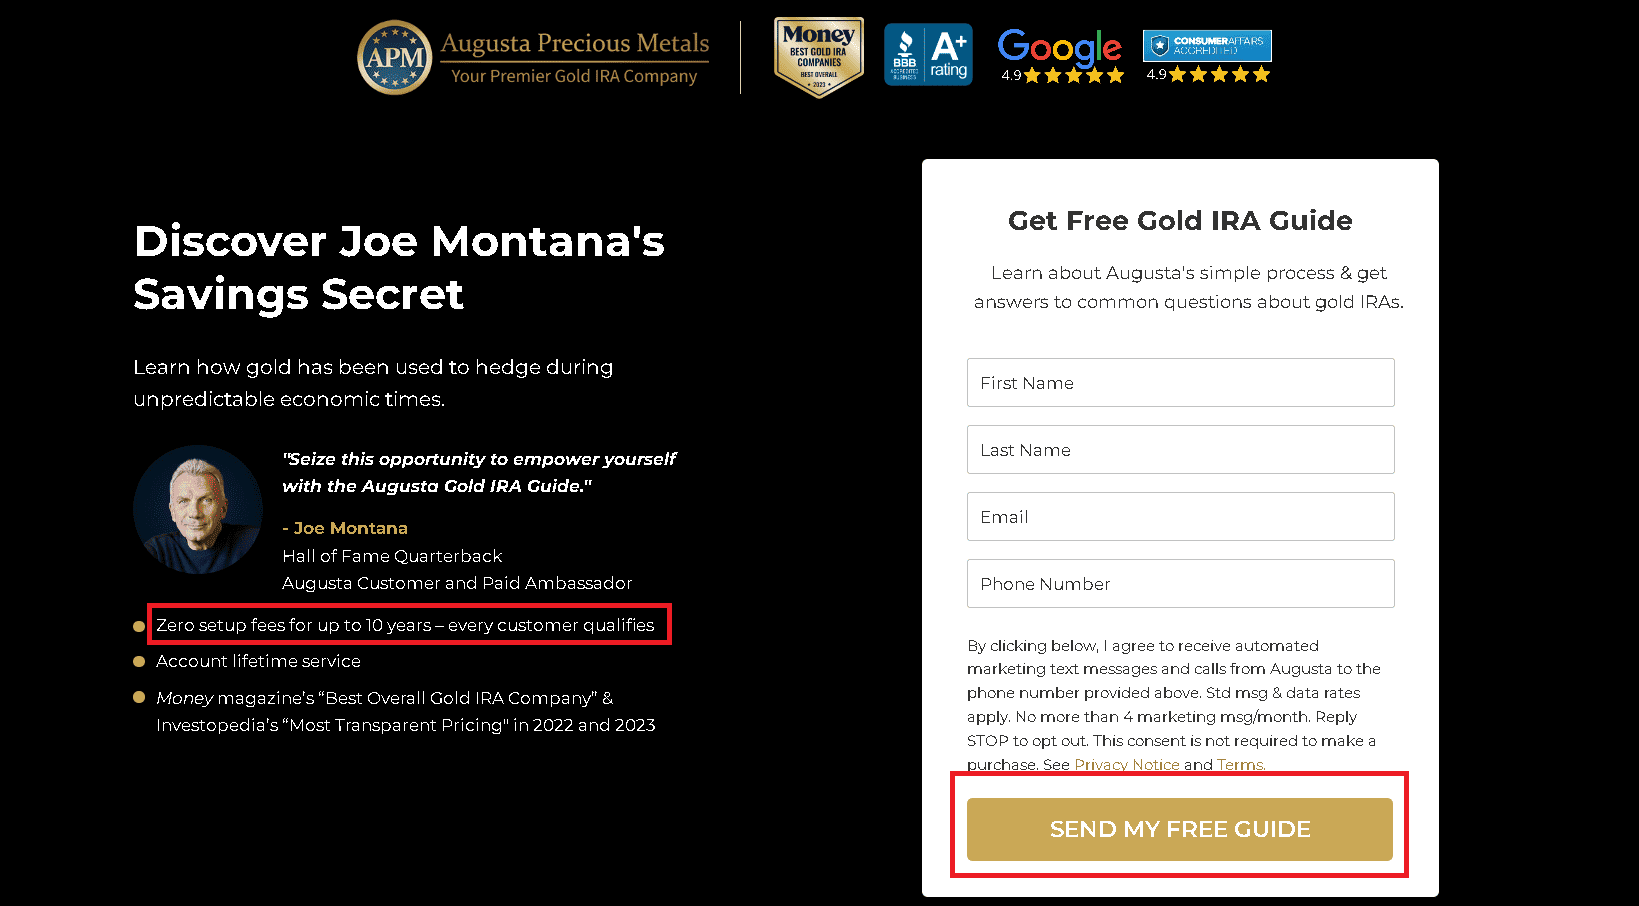 Joe Montana is a paid ambassador for Augusta Precious Metals